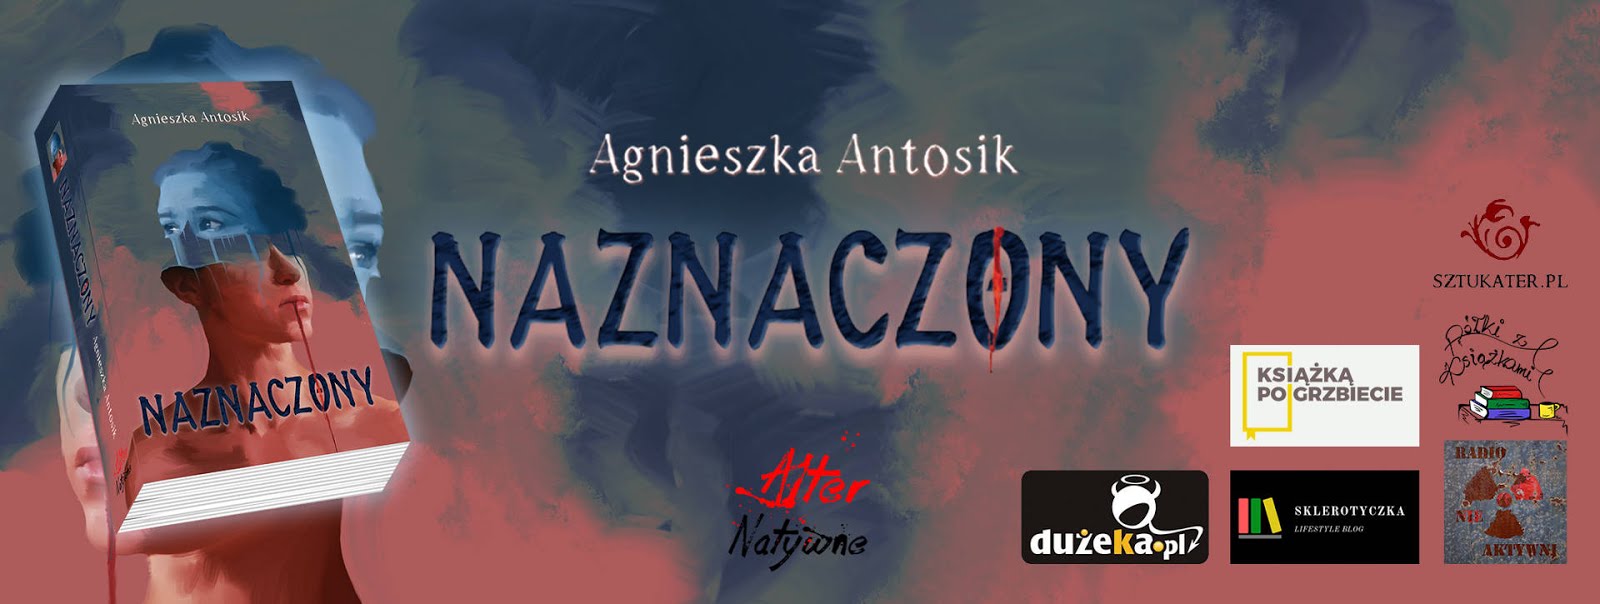 Naznaczony - Agnieszka Antosik